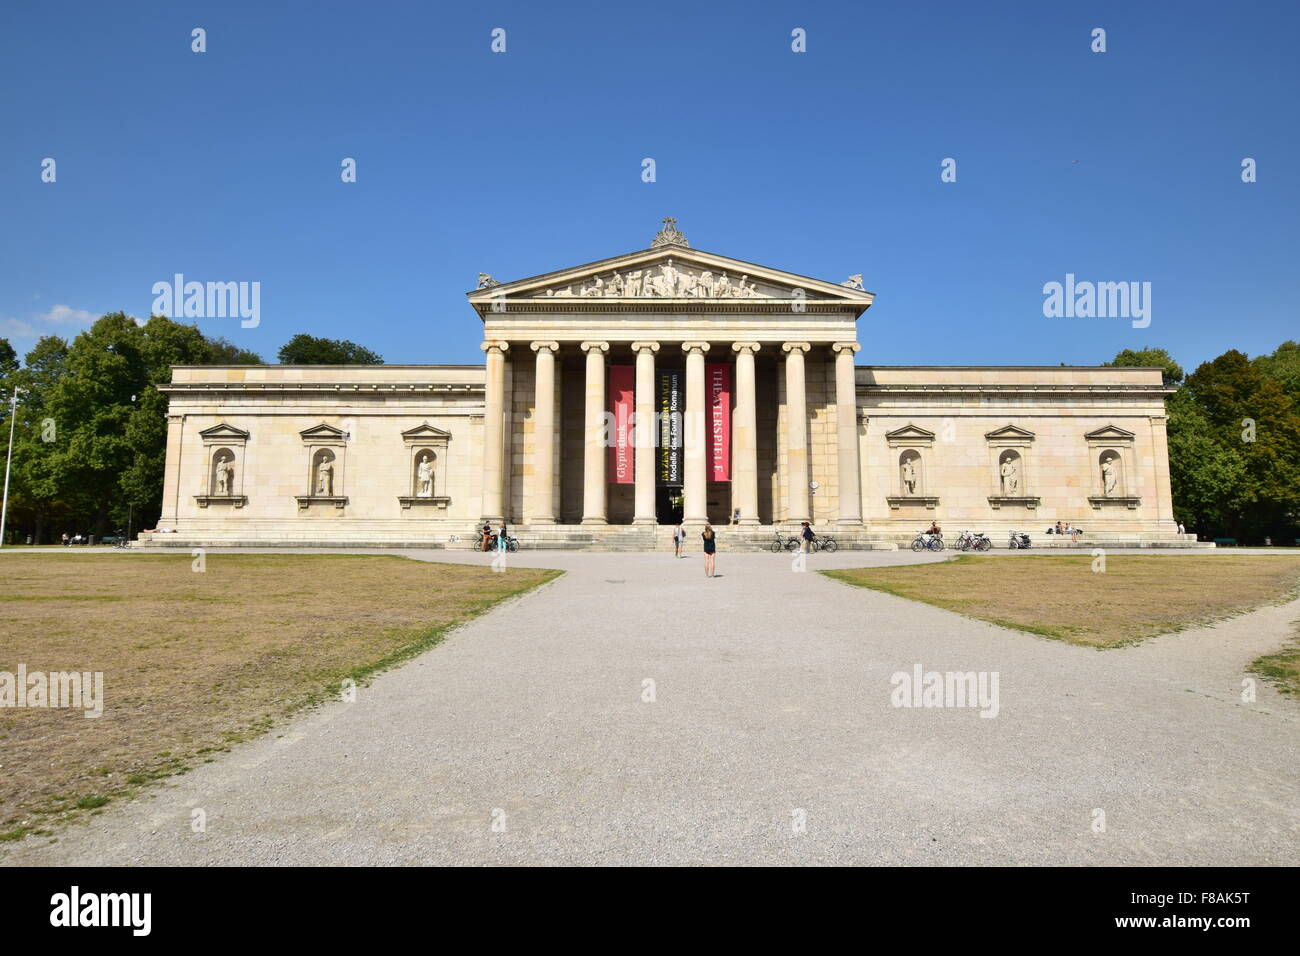 Le musée d'art classique Glyptothèque de Munich, Allemagne Banque D'Images